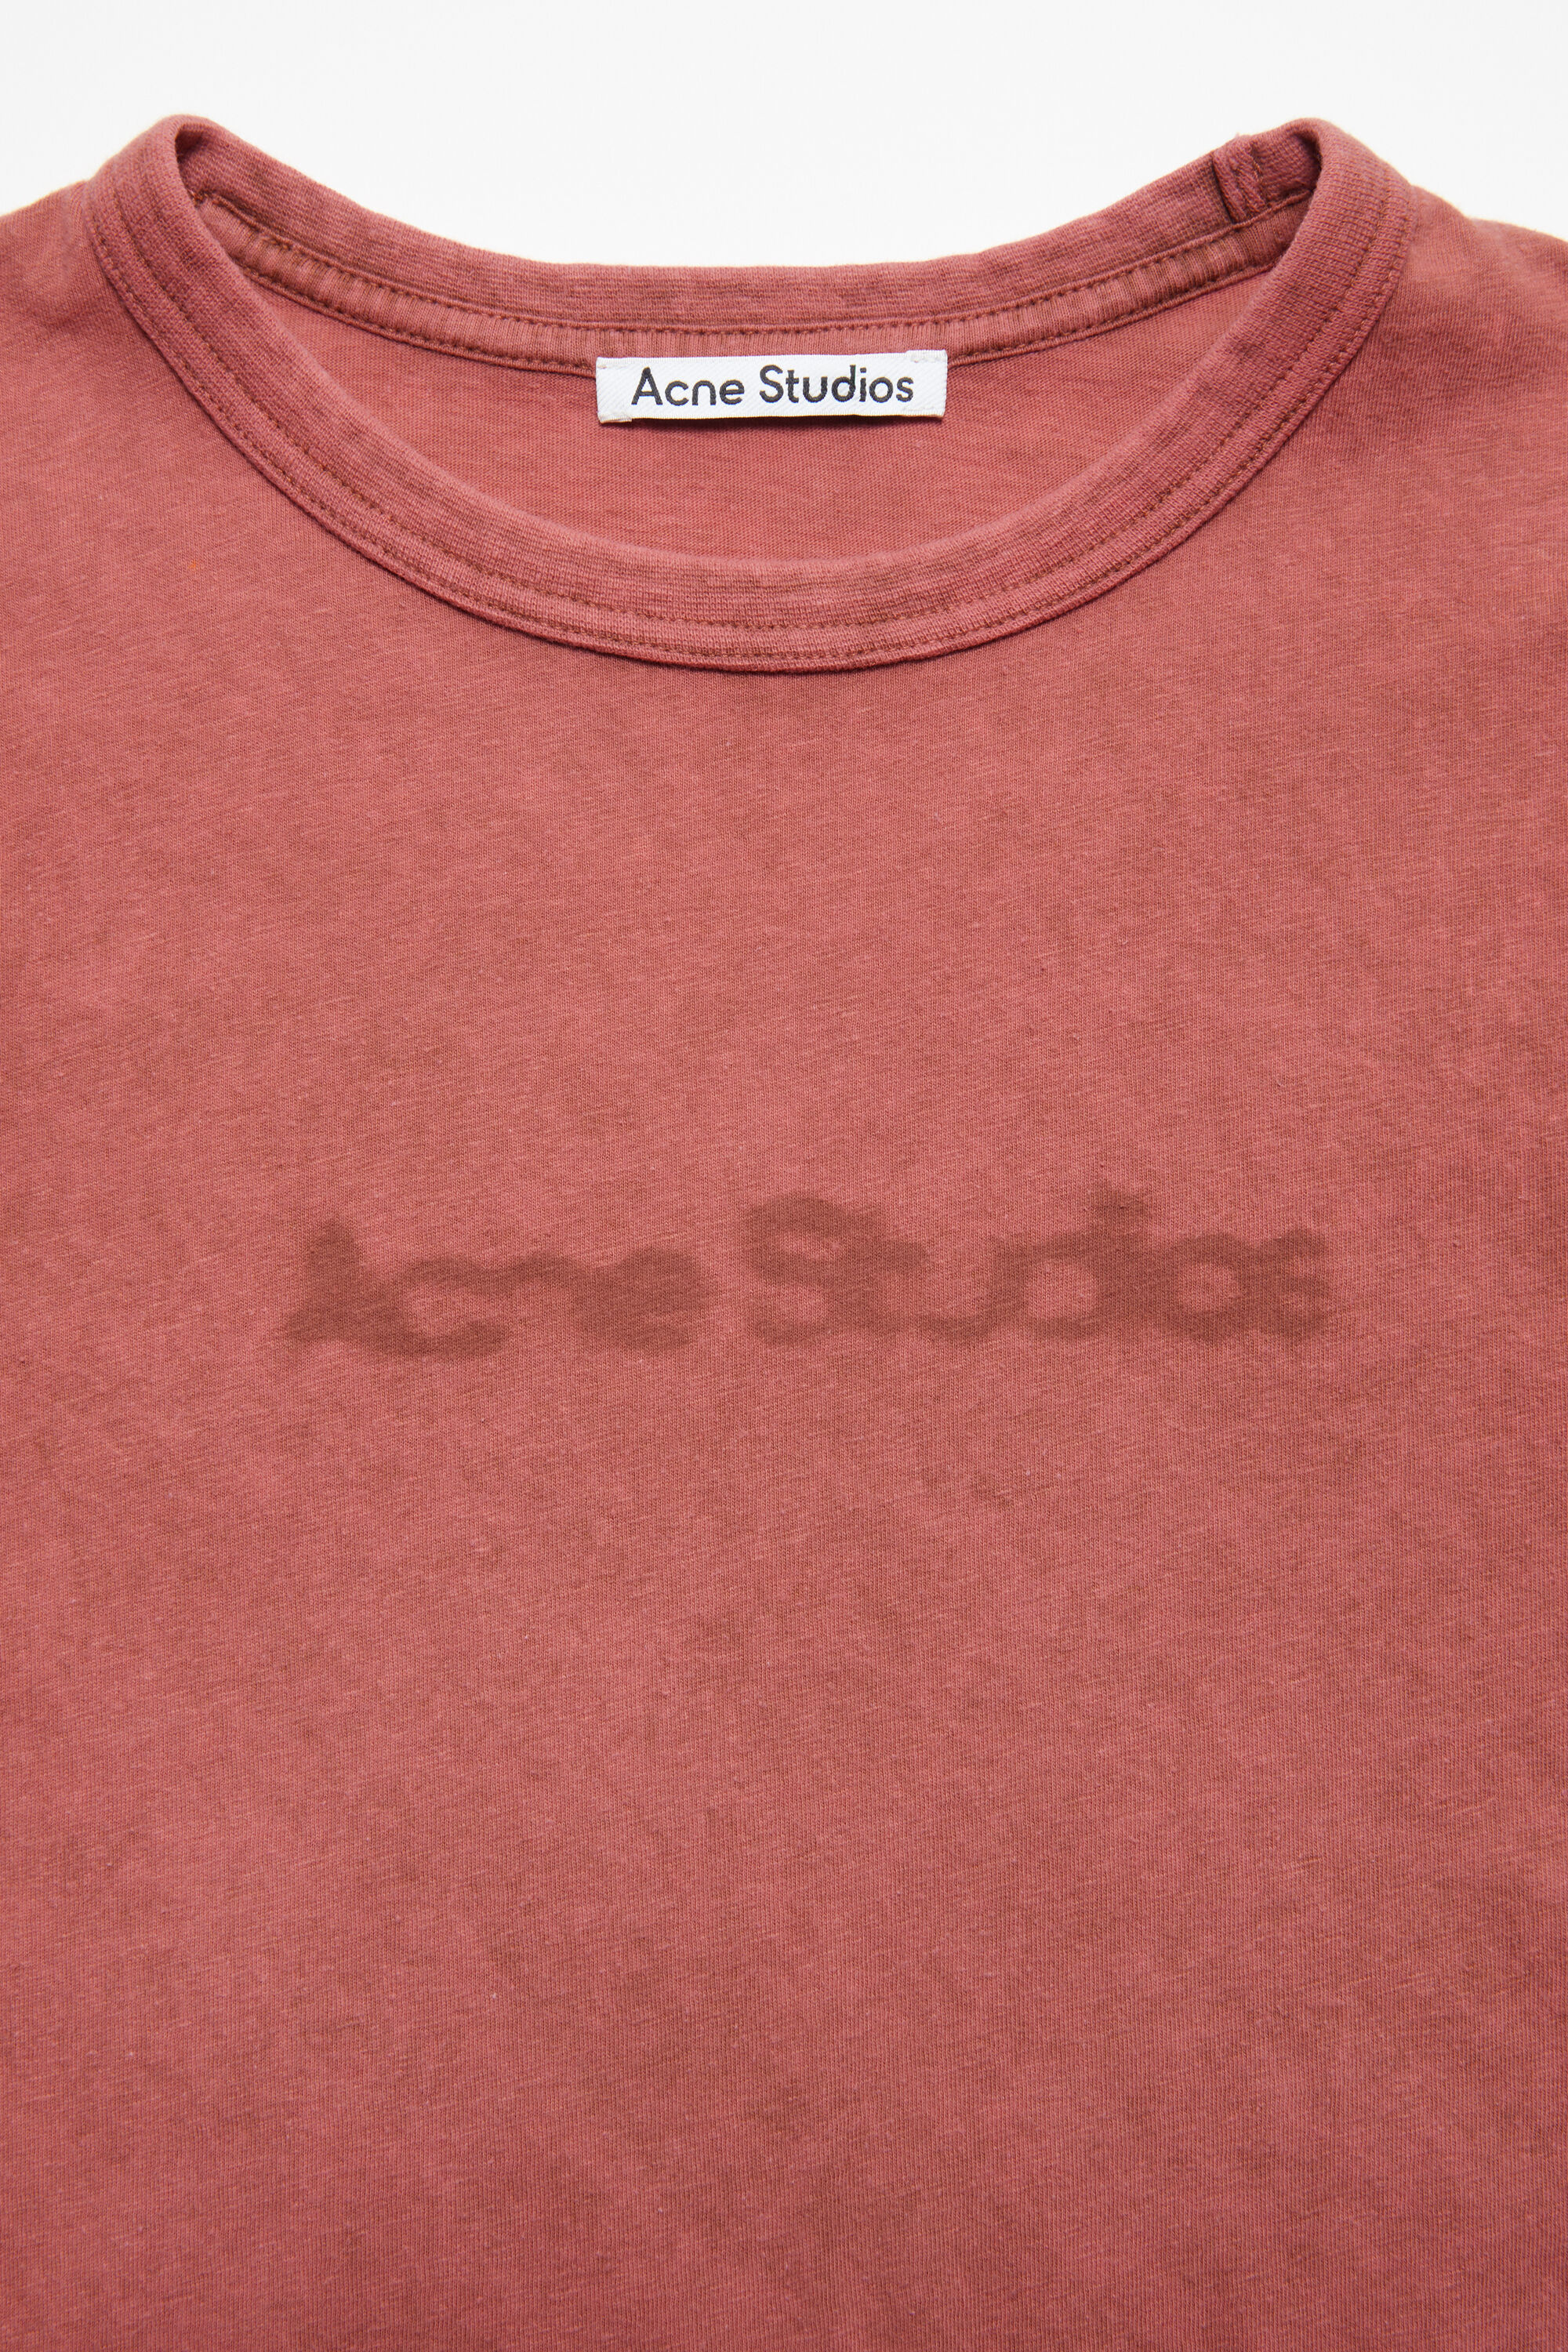 Acne Studios - ぼかしロゴのTシャツ - フィット感のあるデザイン 